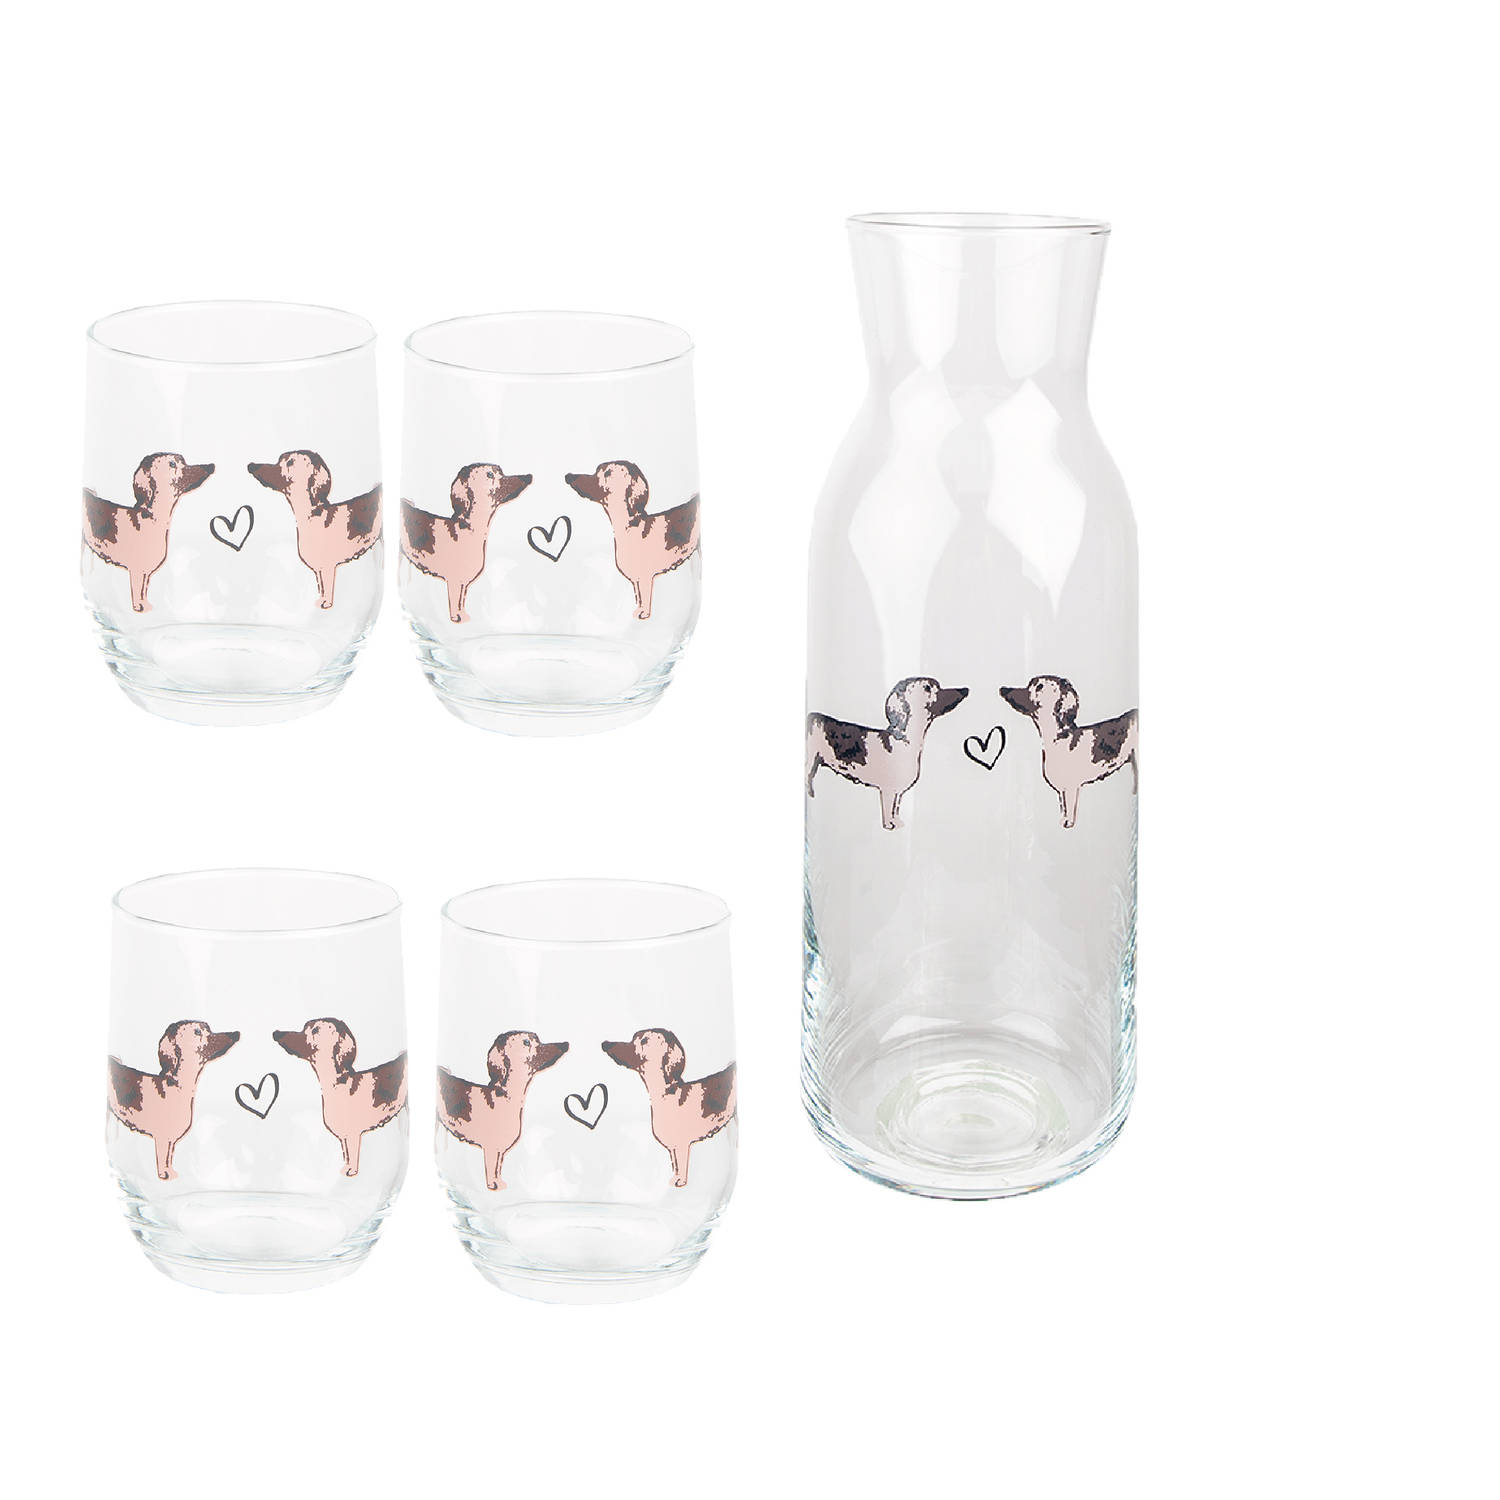 HAES DECO - Waterglas, Drinkglas set van 4 glazen + Karaf - inhoud glas 260 ml - formaat glas Ø 8x9 cm - Collectie: Dachshund Love - Waterglazen, Drinkglazen